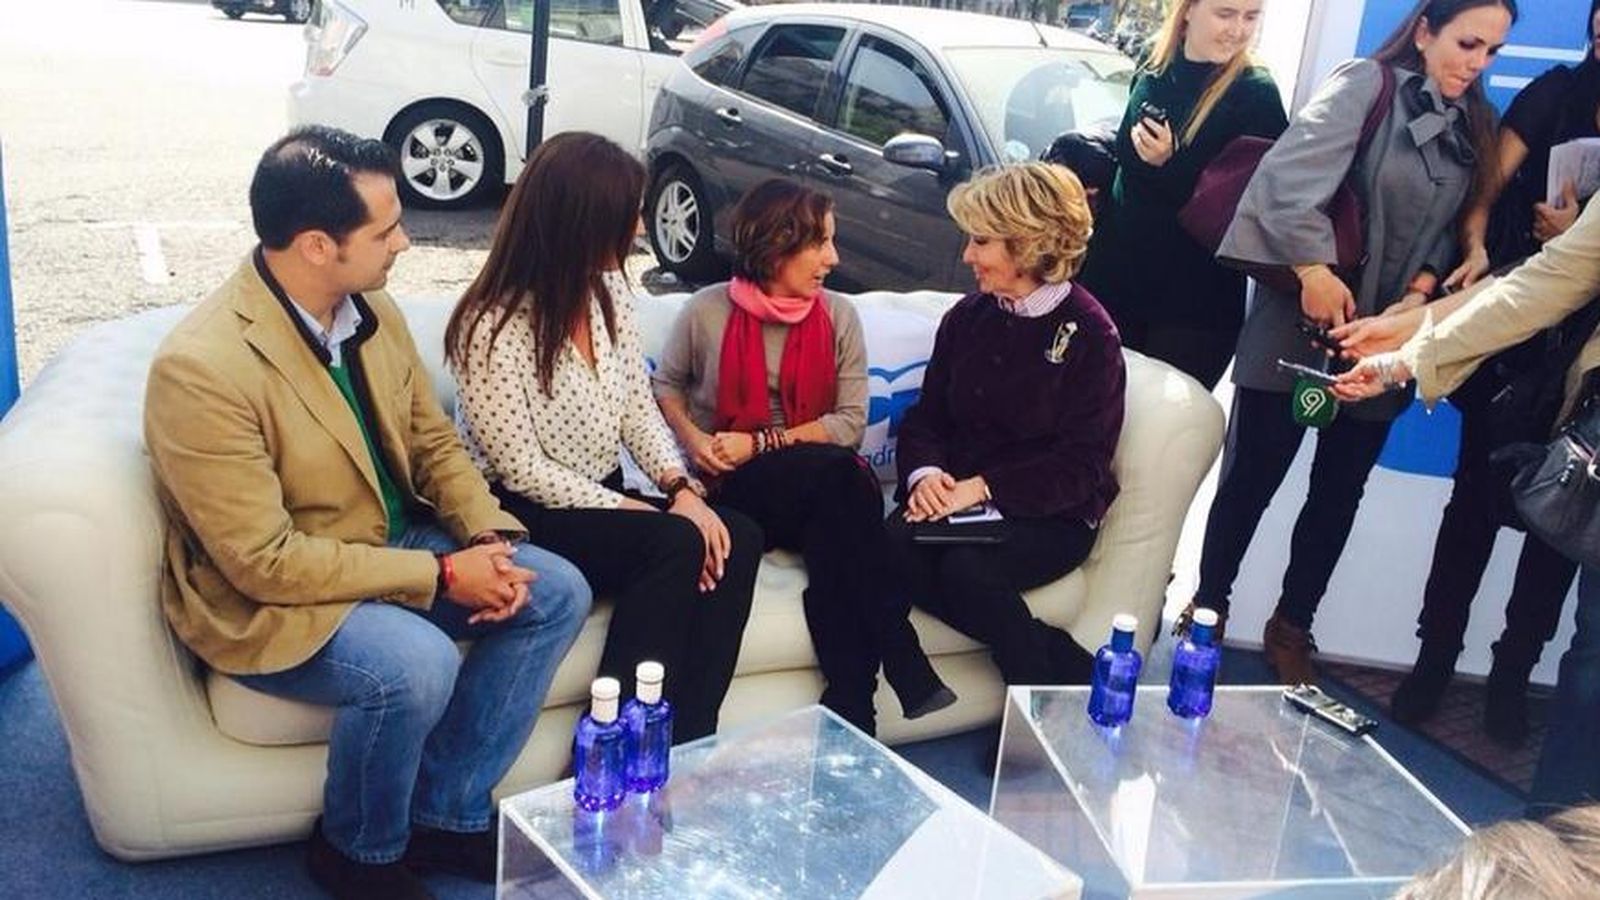 Foto: Aguirre ha puesto un sofá en la calle para escuchar las sugerencias de los ciudadanos (Twitter/@EsperanzAguirre)